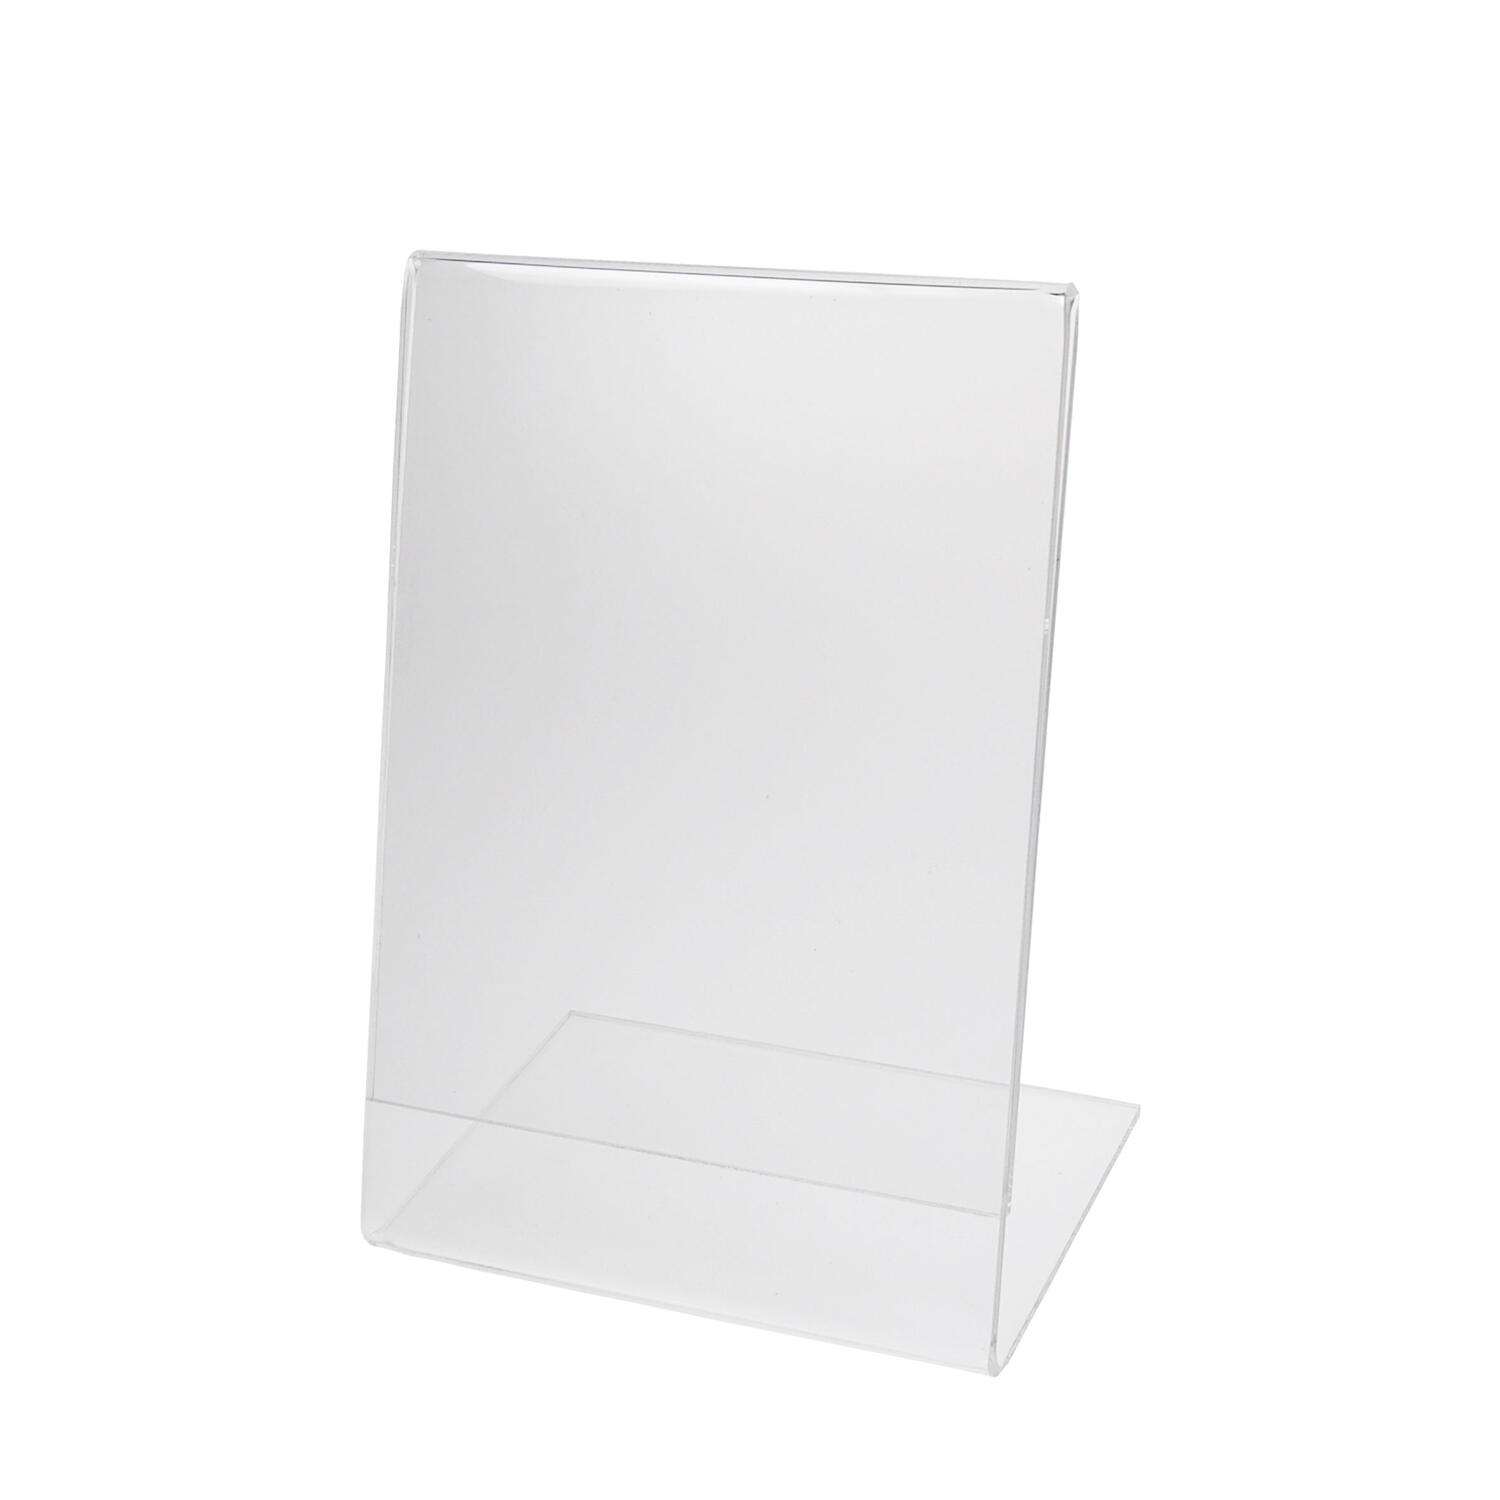 Tischaufsteller L-Stnder aus Acrylglas, A4, 1 Stk.